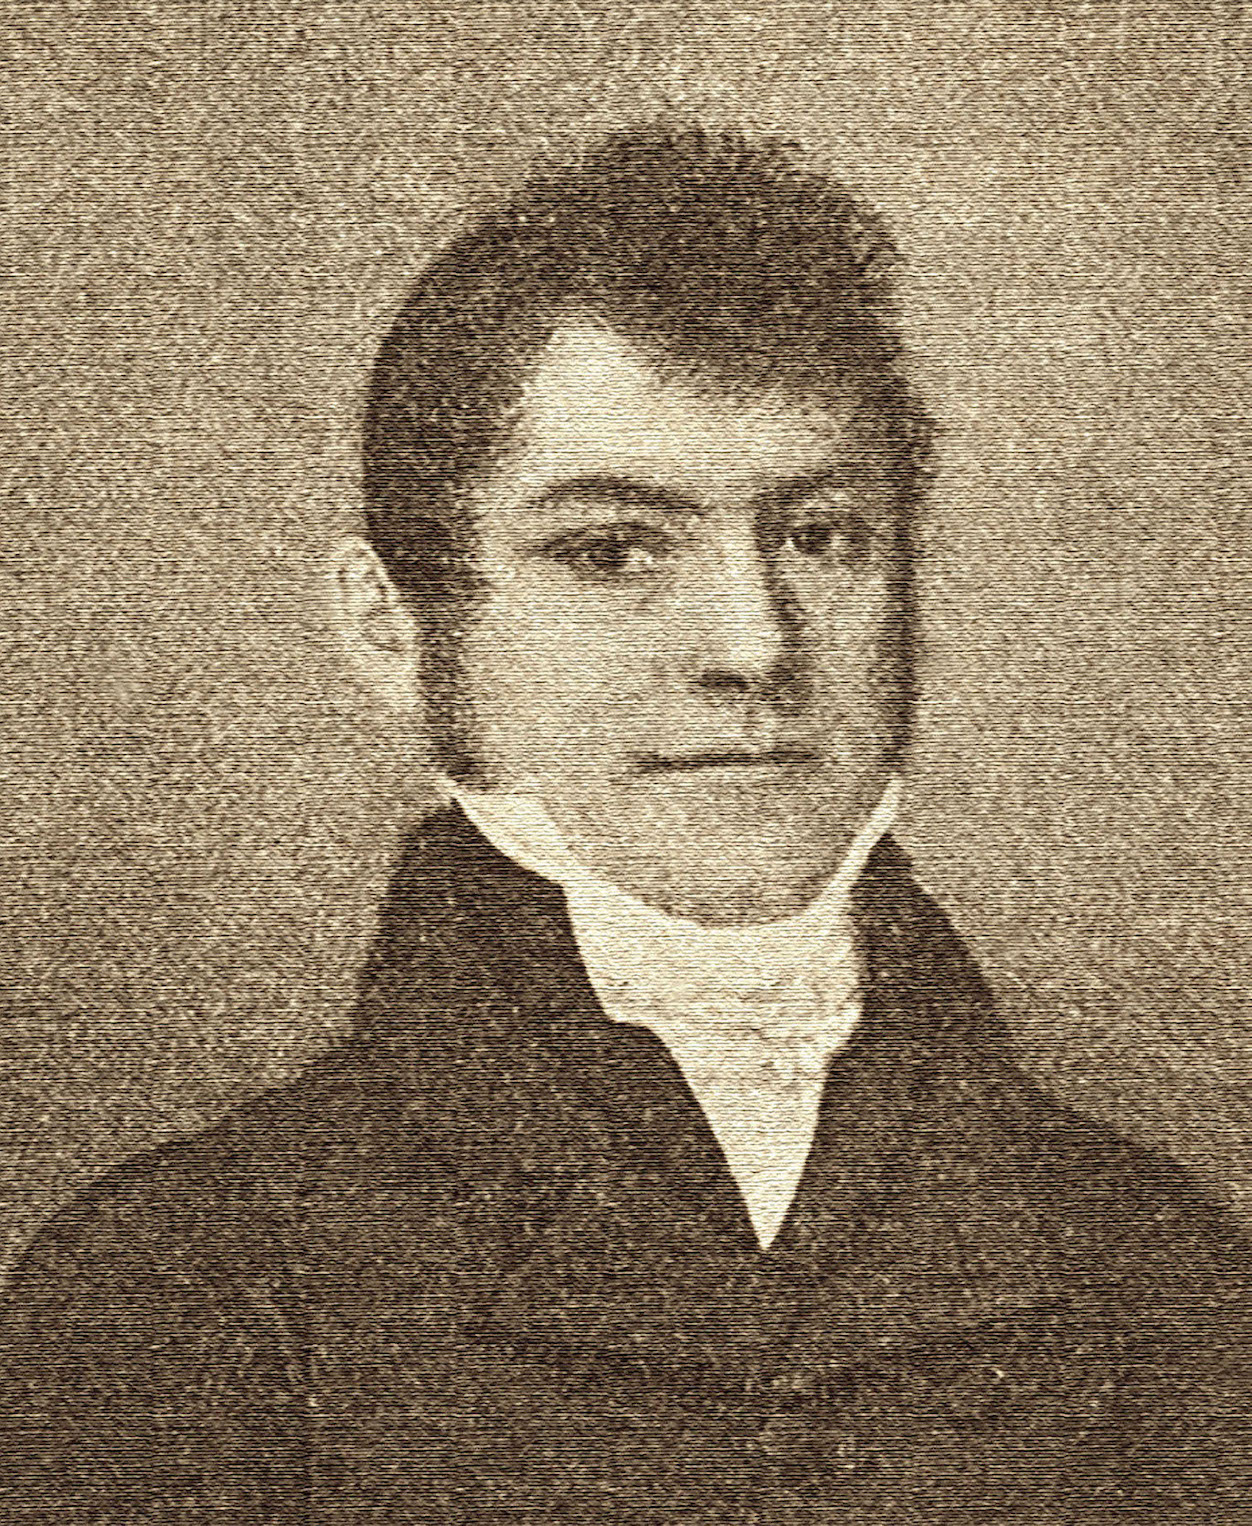 BOVET 1822 Edouard Bovet Founder